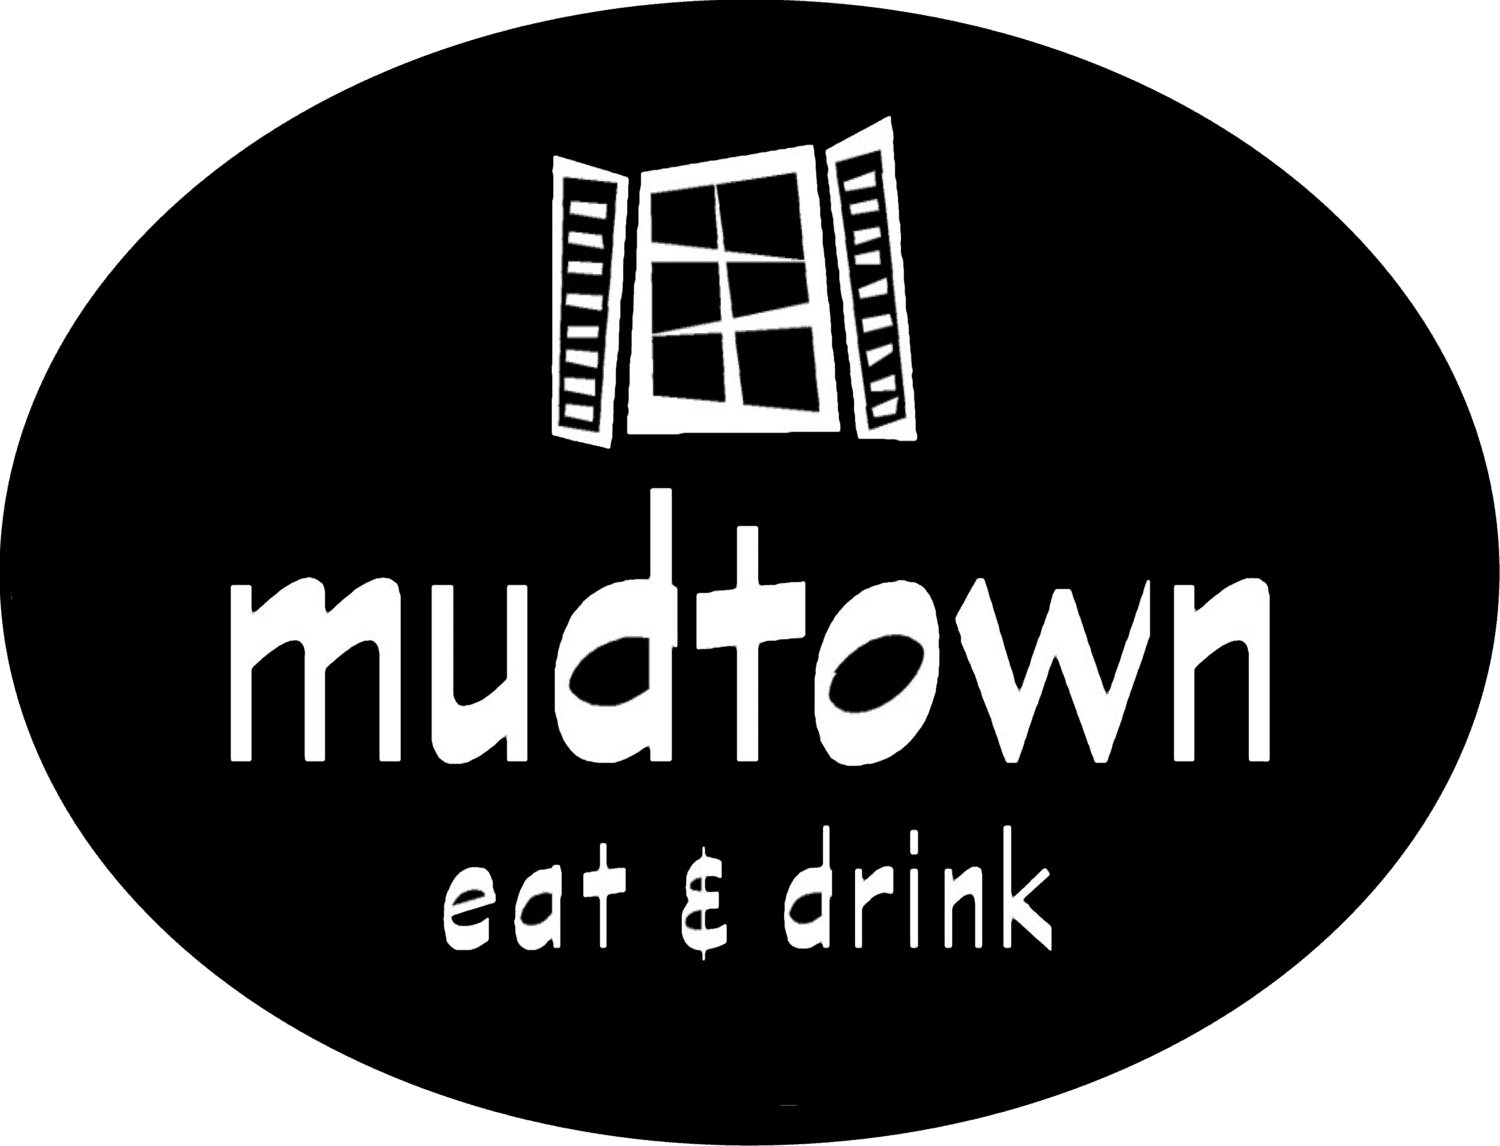 Mudtown